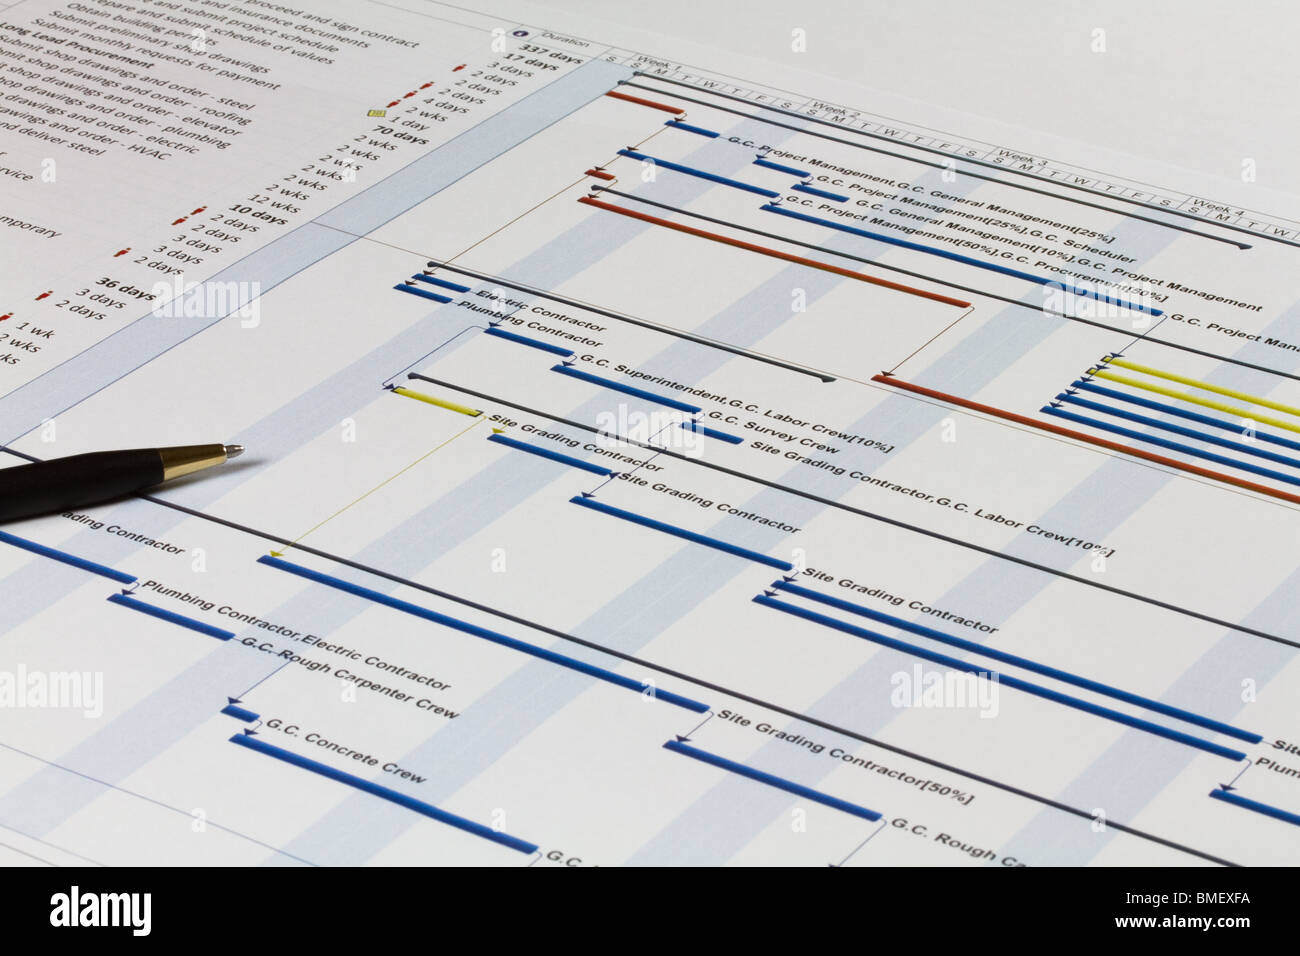 Detaillierten Gantt-Diagramm zeigt, Notizen, Aufgaben und Ressourcen. Enthält einen Stift auf der linken Seite. Stockfoto